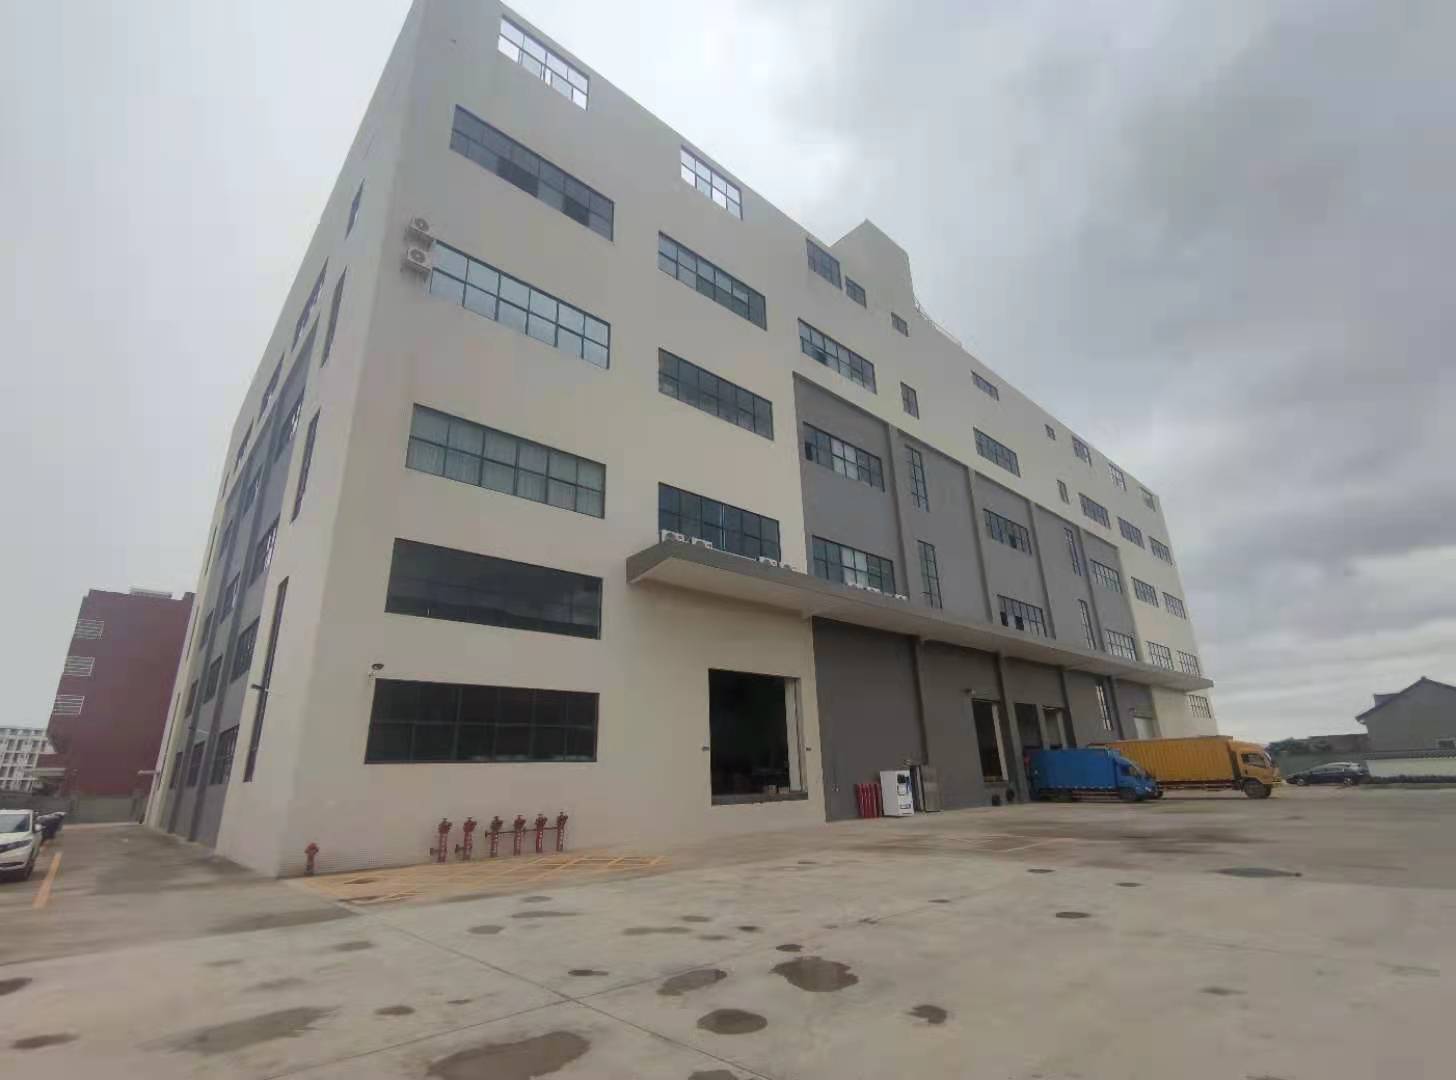 太平工业区高台物流仓仓库3-4楼6000平方滴水6米